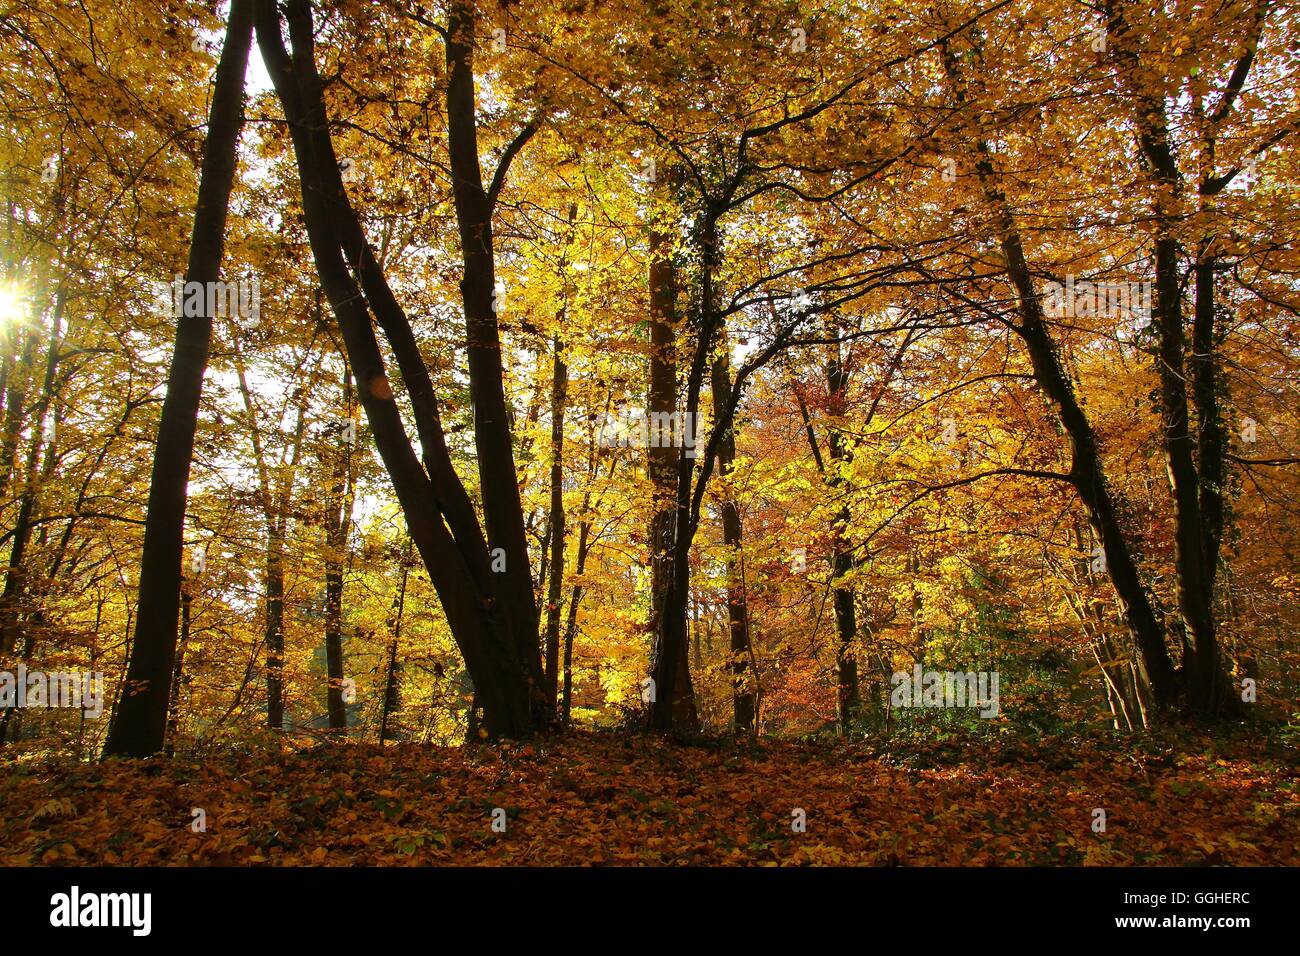 Autumn Landscape, Autumn Park, Autumn Colors / Knoops Park, Parklandschaft im Herbst, Herbstfärbung, Park Stock Photo